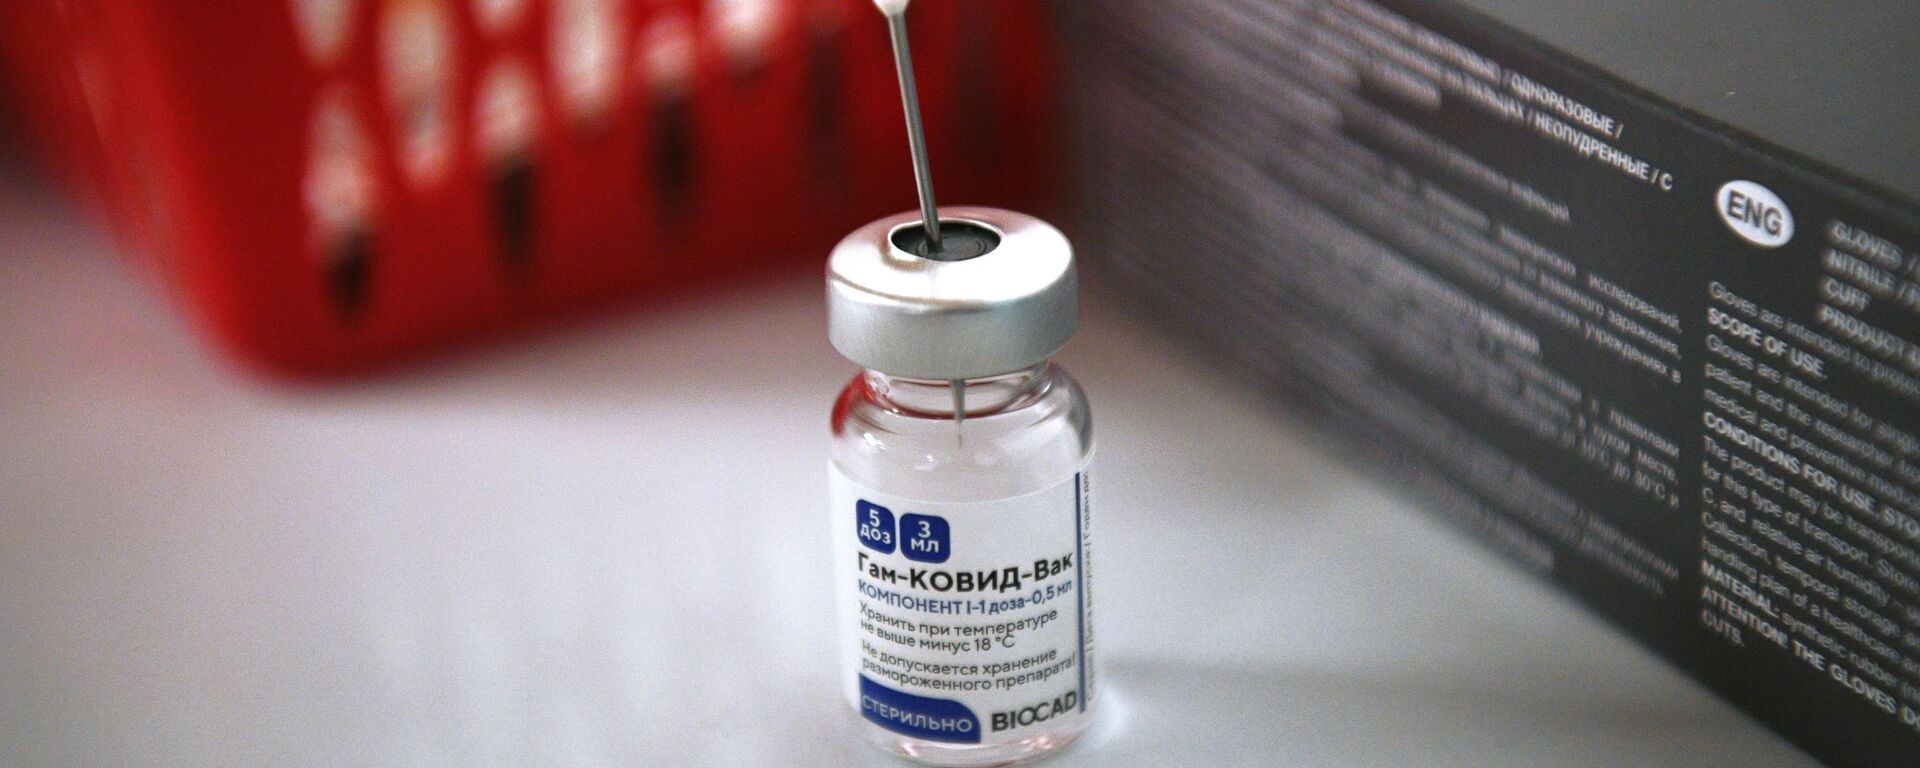 Vacuna rusa contra coronavirus Sputnik V - Sputnik Mundo, 1920, 01.02.2021